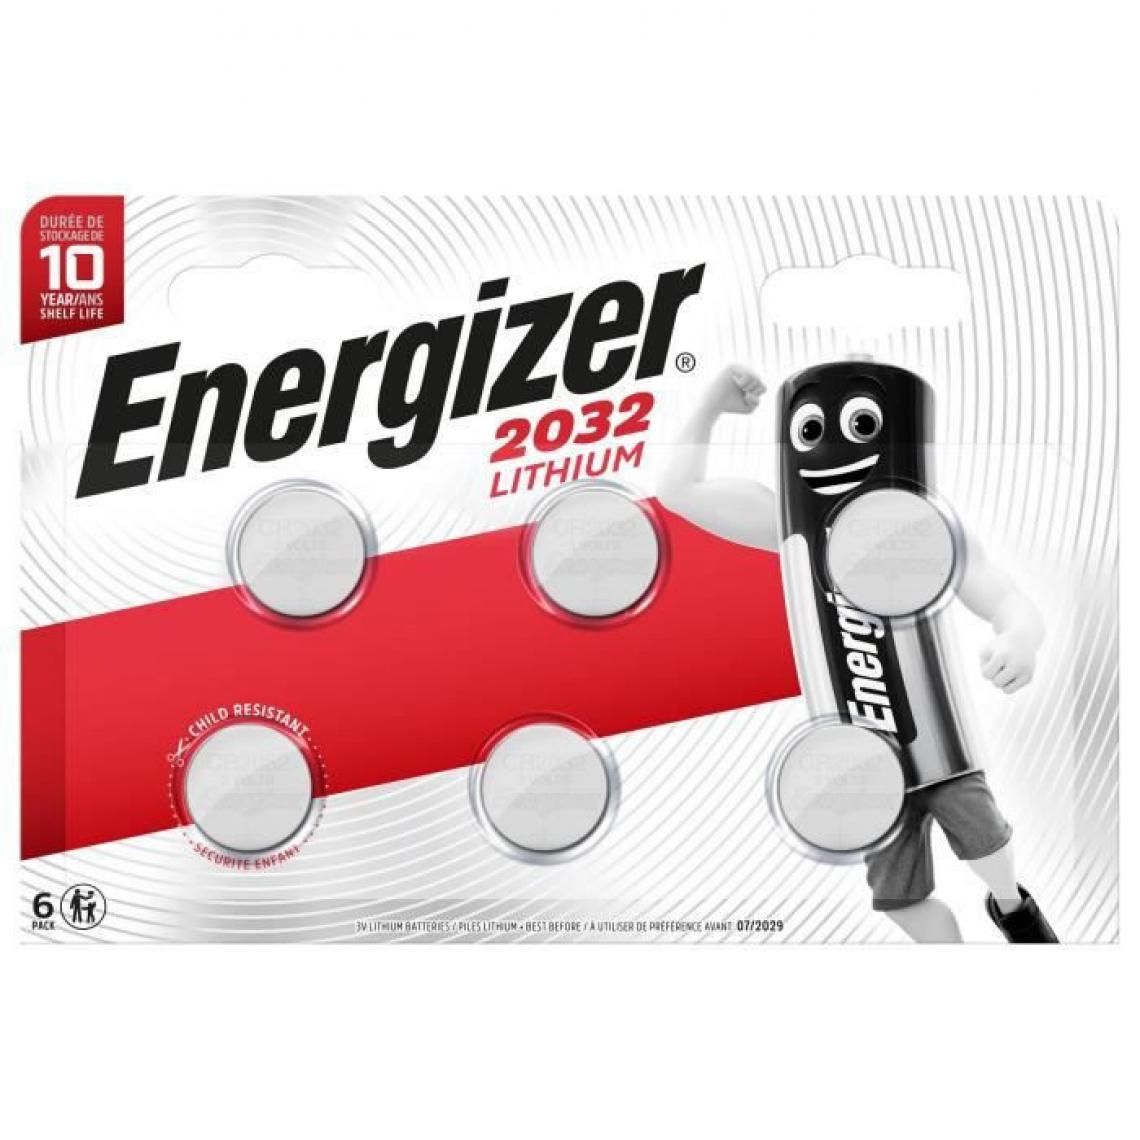 Energizer - Piles bouton Energizer Lithium 2032, pack de 6 - Piles rechargeables